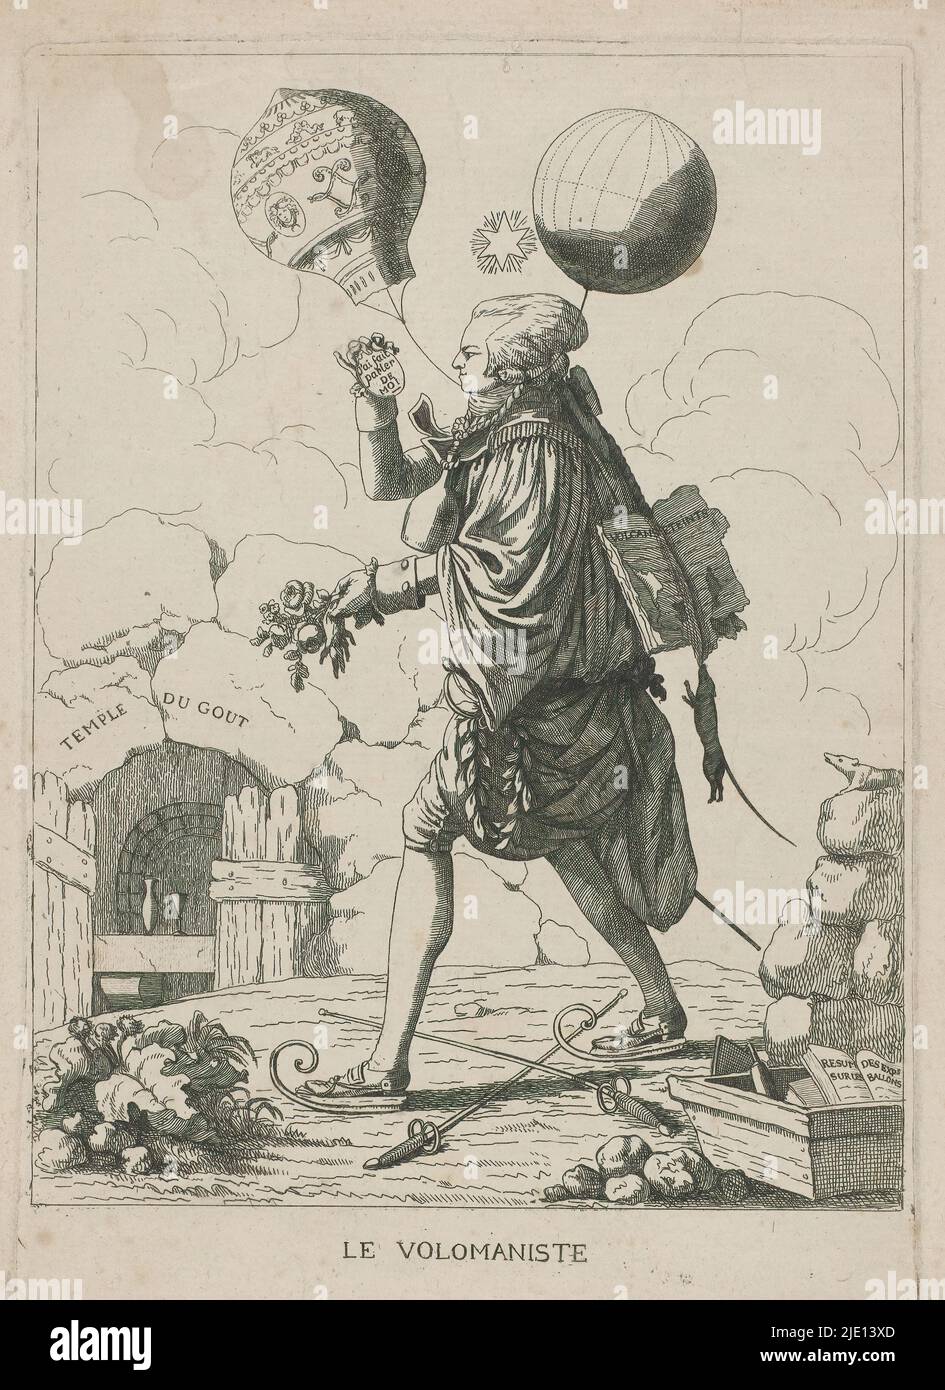 Satire über einen Ballonfahrer, Le volomaniste (Titel auf Objekt), Satire über den Ballonfahrer, möglicherweise über Barthélemy Faujas de Saint-Fond, der 1783-84 auf den Flügen der Brüder Montgolfier veröffentlichte. Der Mensch geht auf Schlittschuhe über das Land zum Tor 'Temple du Gout'. An seinem Kopf zwei Heißluftballons. Auf seinem Rücken ist eine rattengefressen Kopie seines Buches 'Recherches sur les volcans éteints du Vivarais et du Velay' von 1778., Druckerei: Anonym, Frankreich, 1784 - 1785, Papier, Ätzen, Höhe 230 mm × Breite 160 mm, Höhe 245 mm × Breite 180 mm Stockfoto